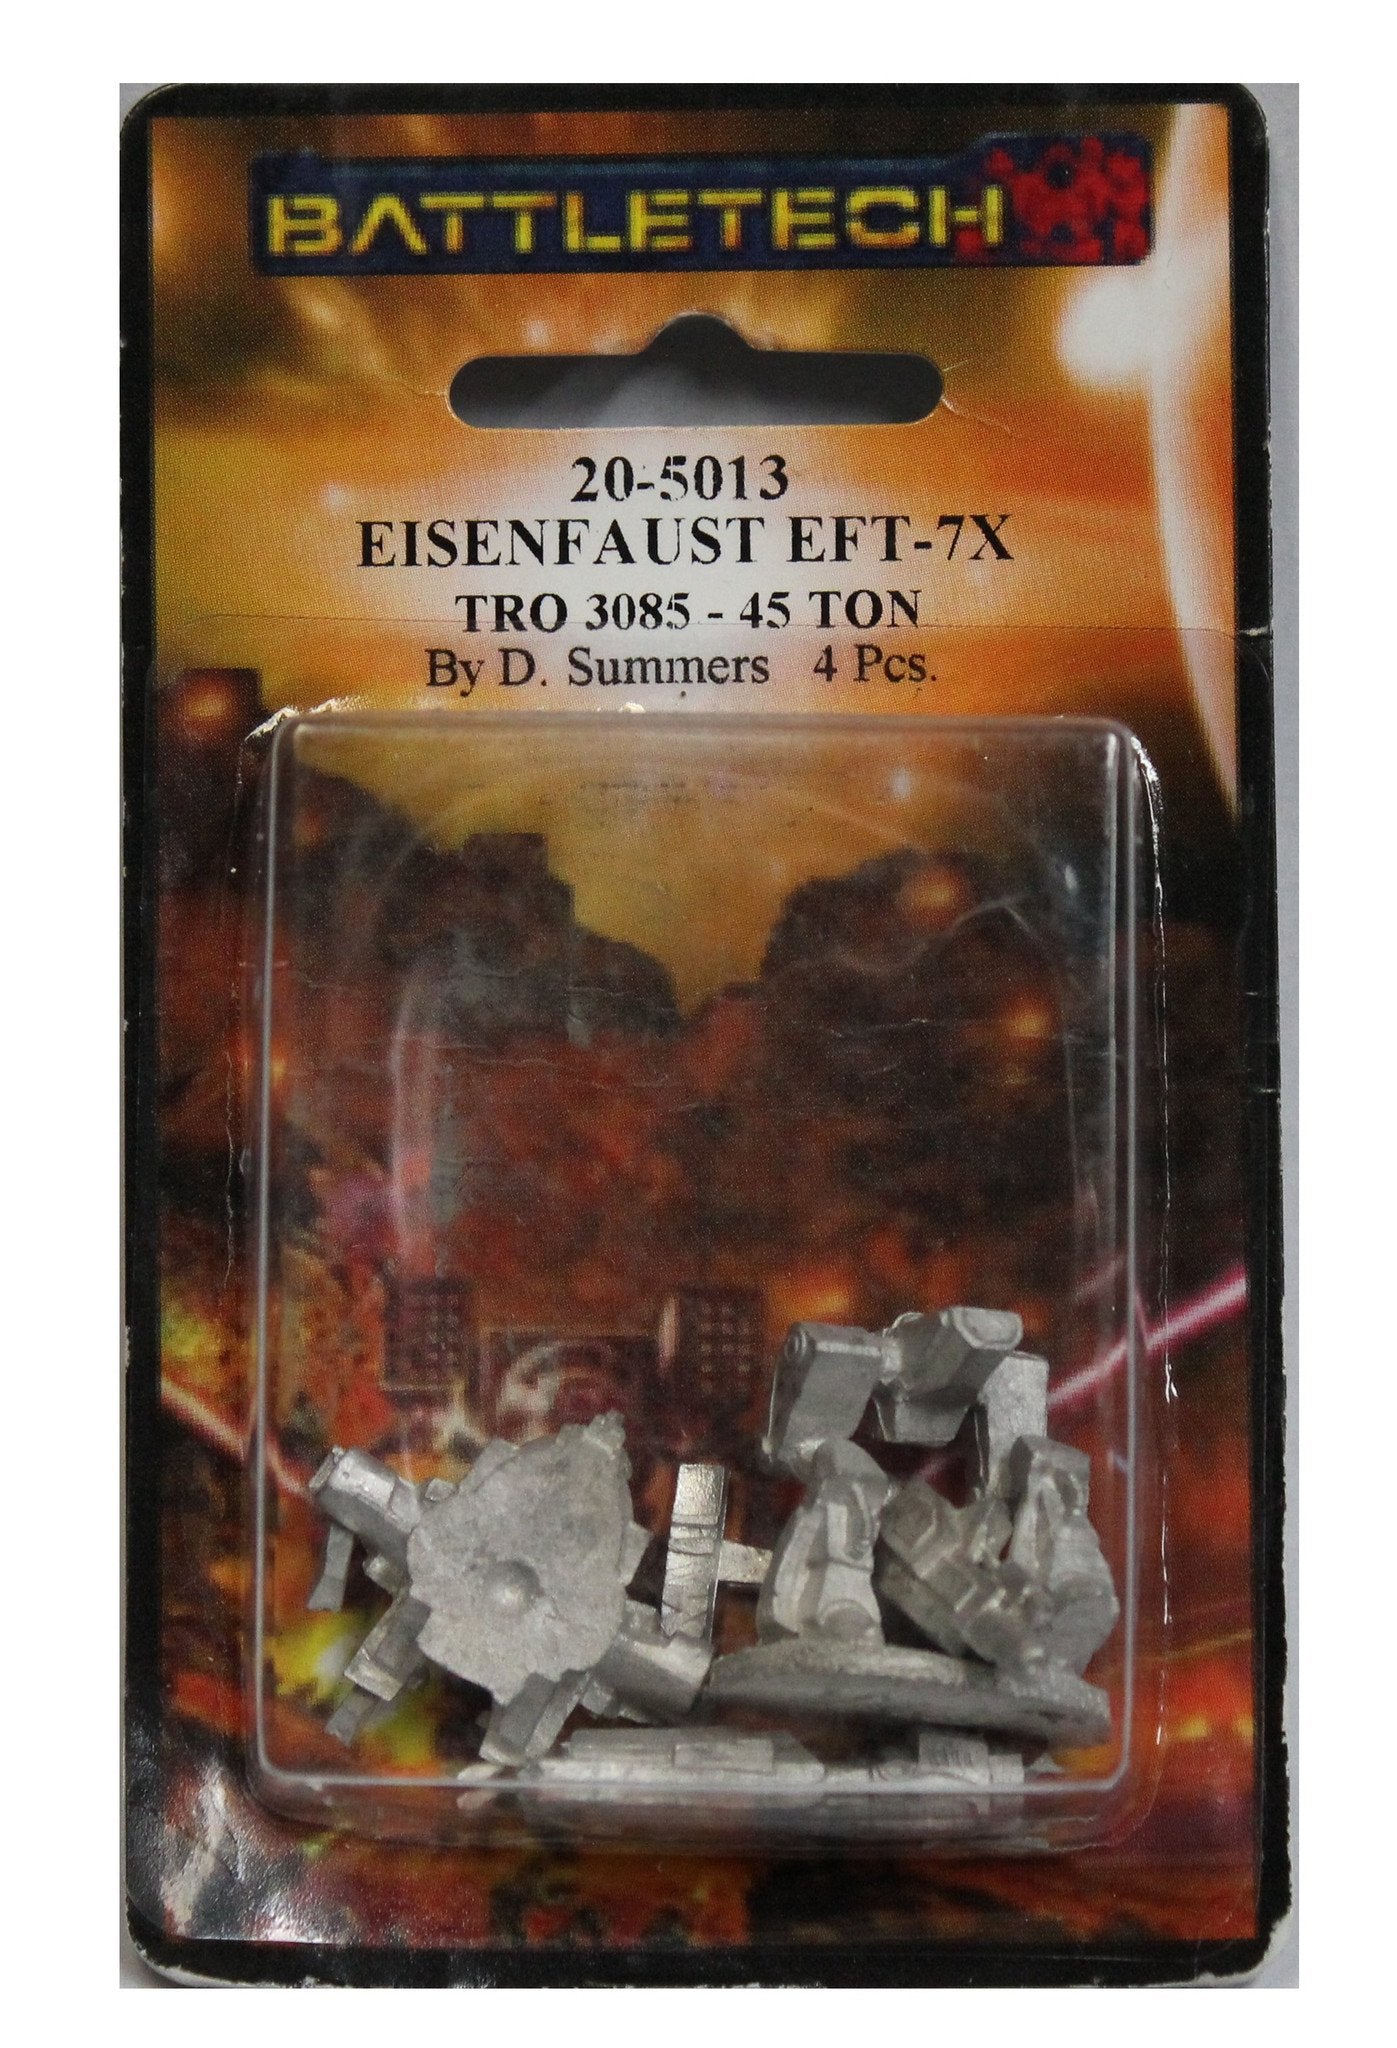 BATTLETECH 20-5013 Eisenfaust EFT-7X by BATTLETECH